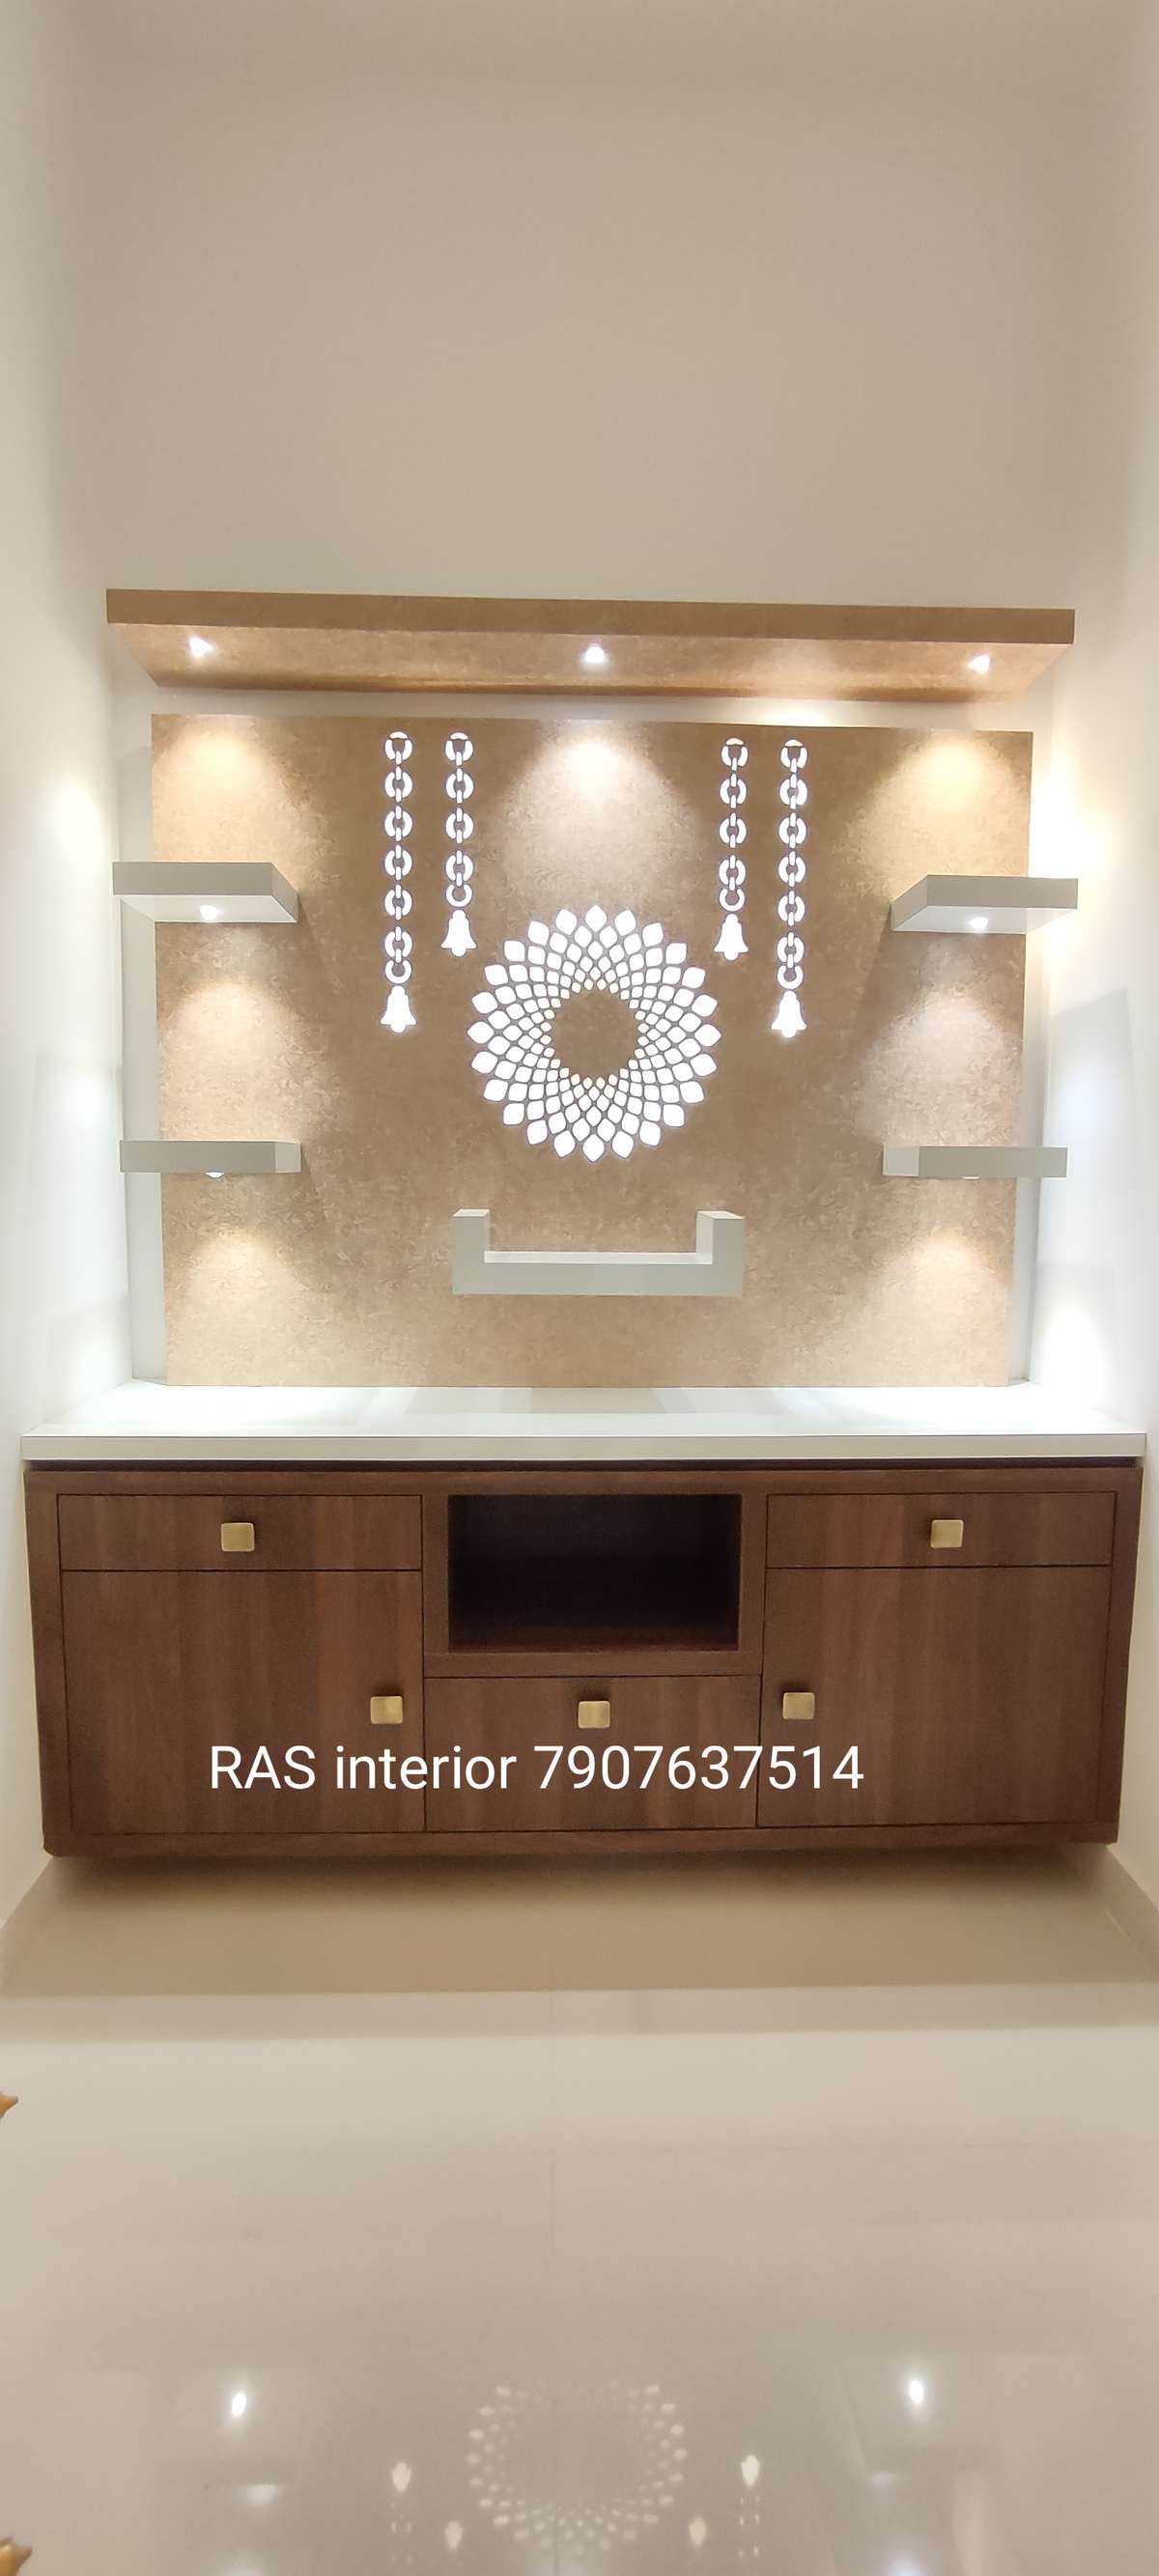 Lighting, Prayer Room, Storage Designs by Interior Designer RAS interior, Palakkad | Kolo